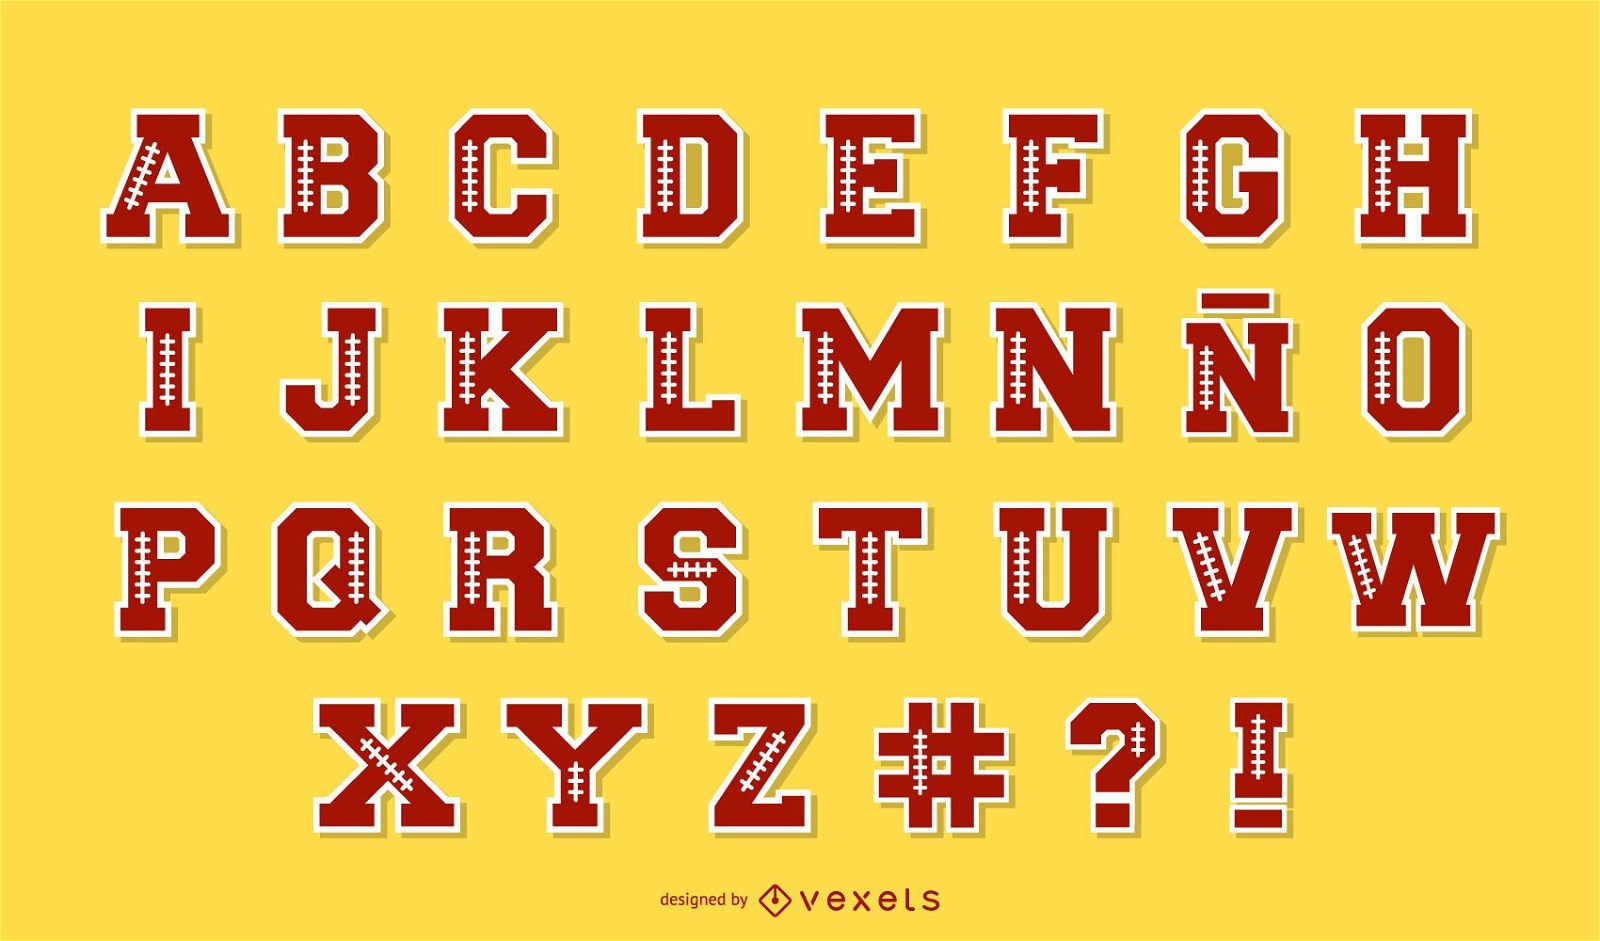 Paquete de letras del alfabeto de f?tbol